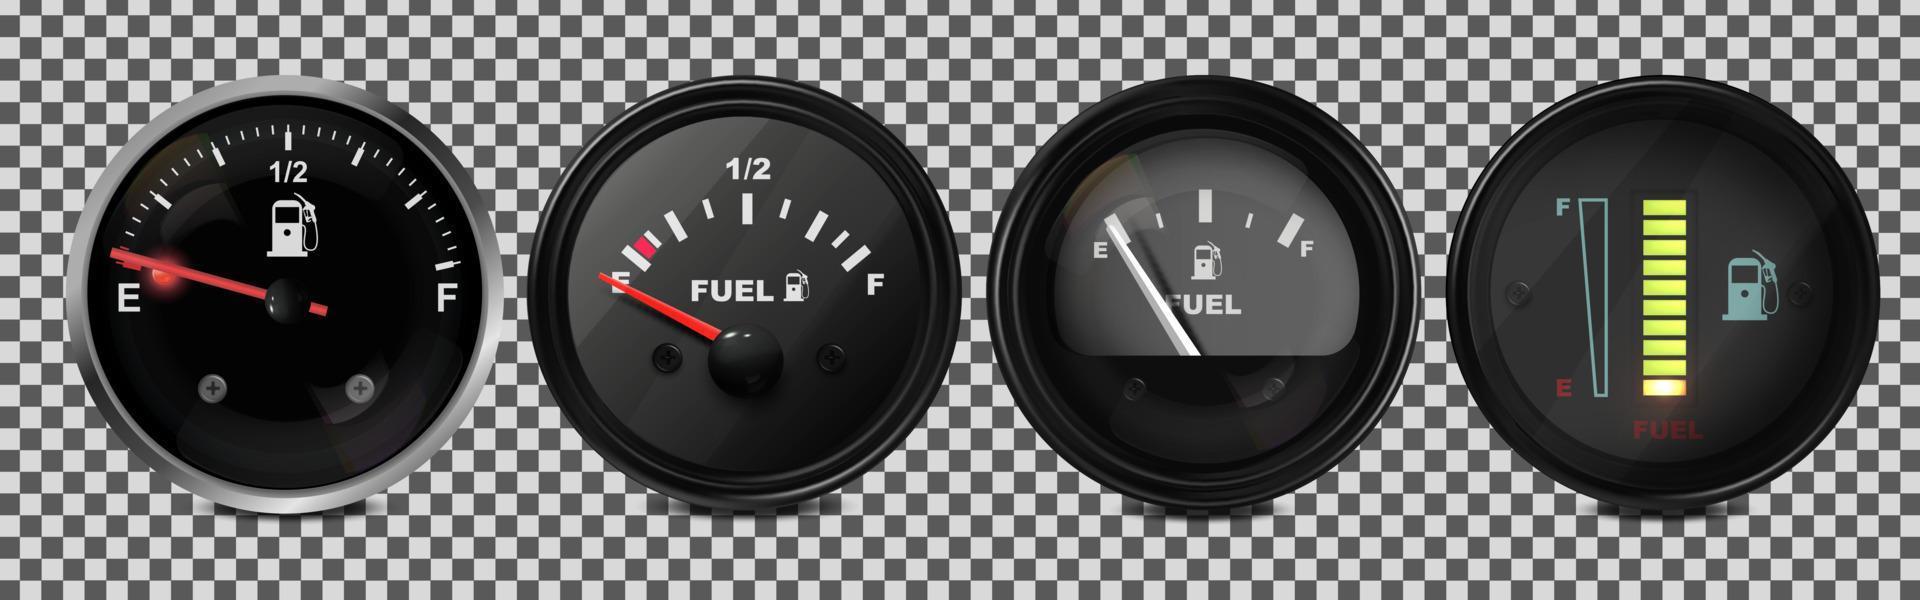 vetor realista, conjunto 3d de indicadores de nível de combustível em um carro. ilustração em um fundo transparente.